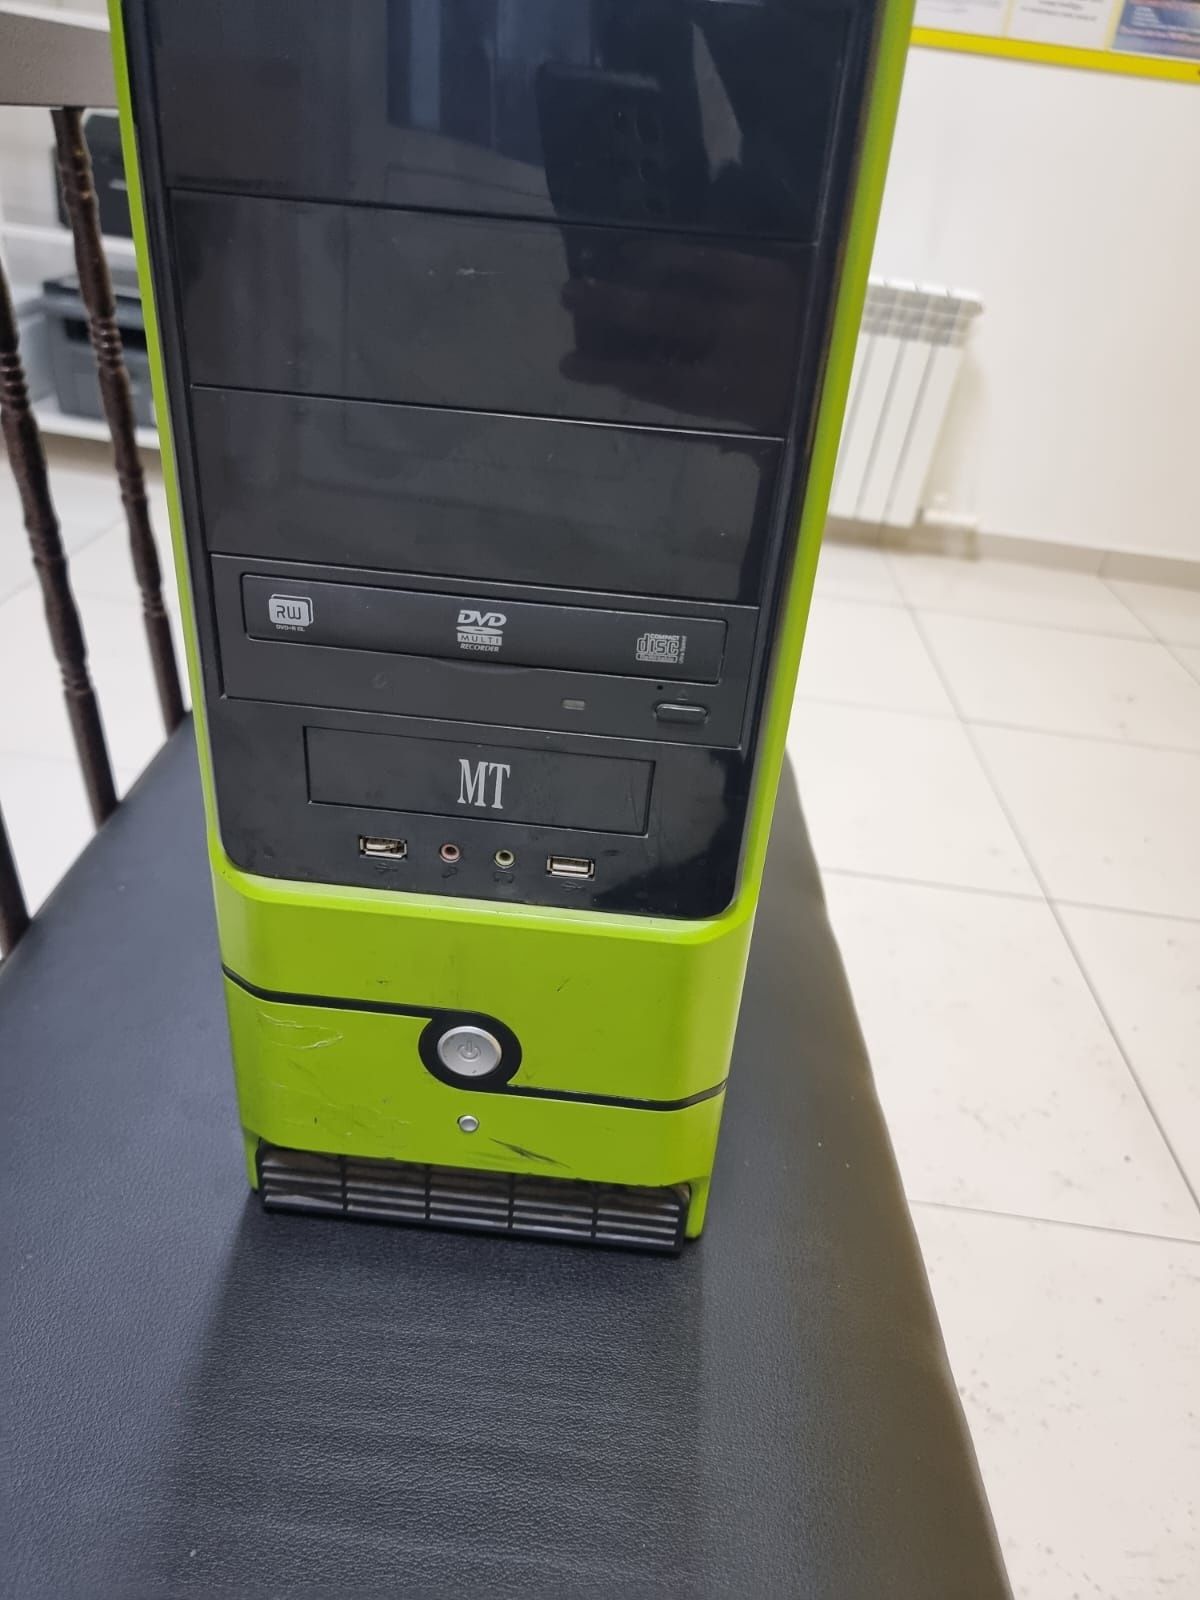 2 процессора. Зелёный MT, 1 терабайт. Acer 2 терабайт